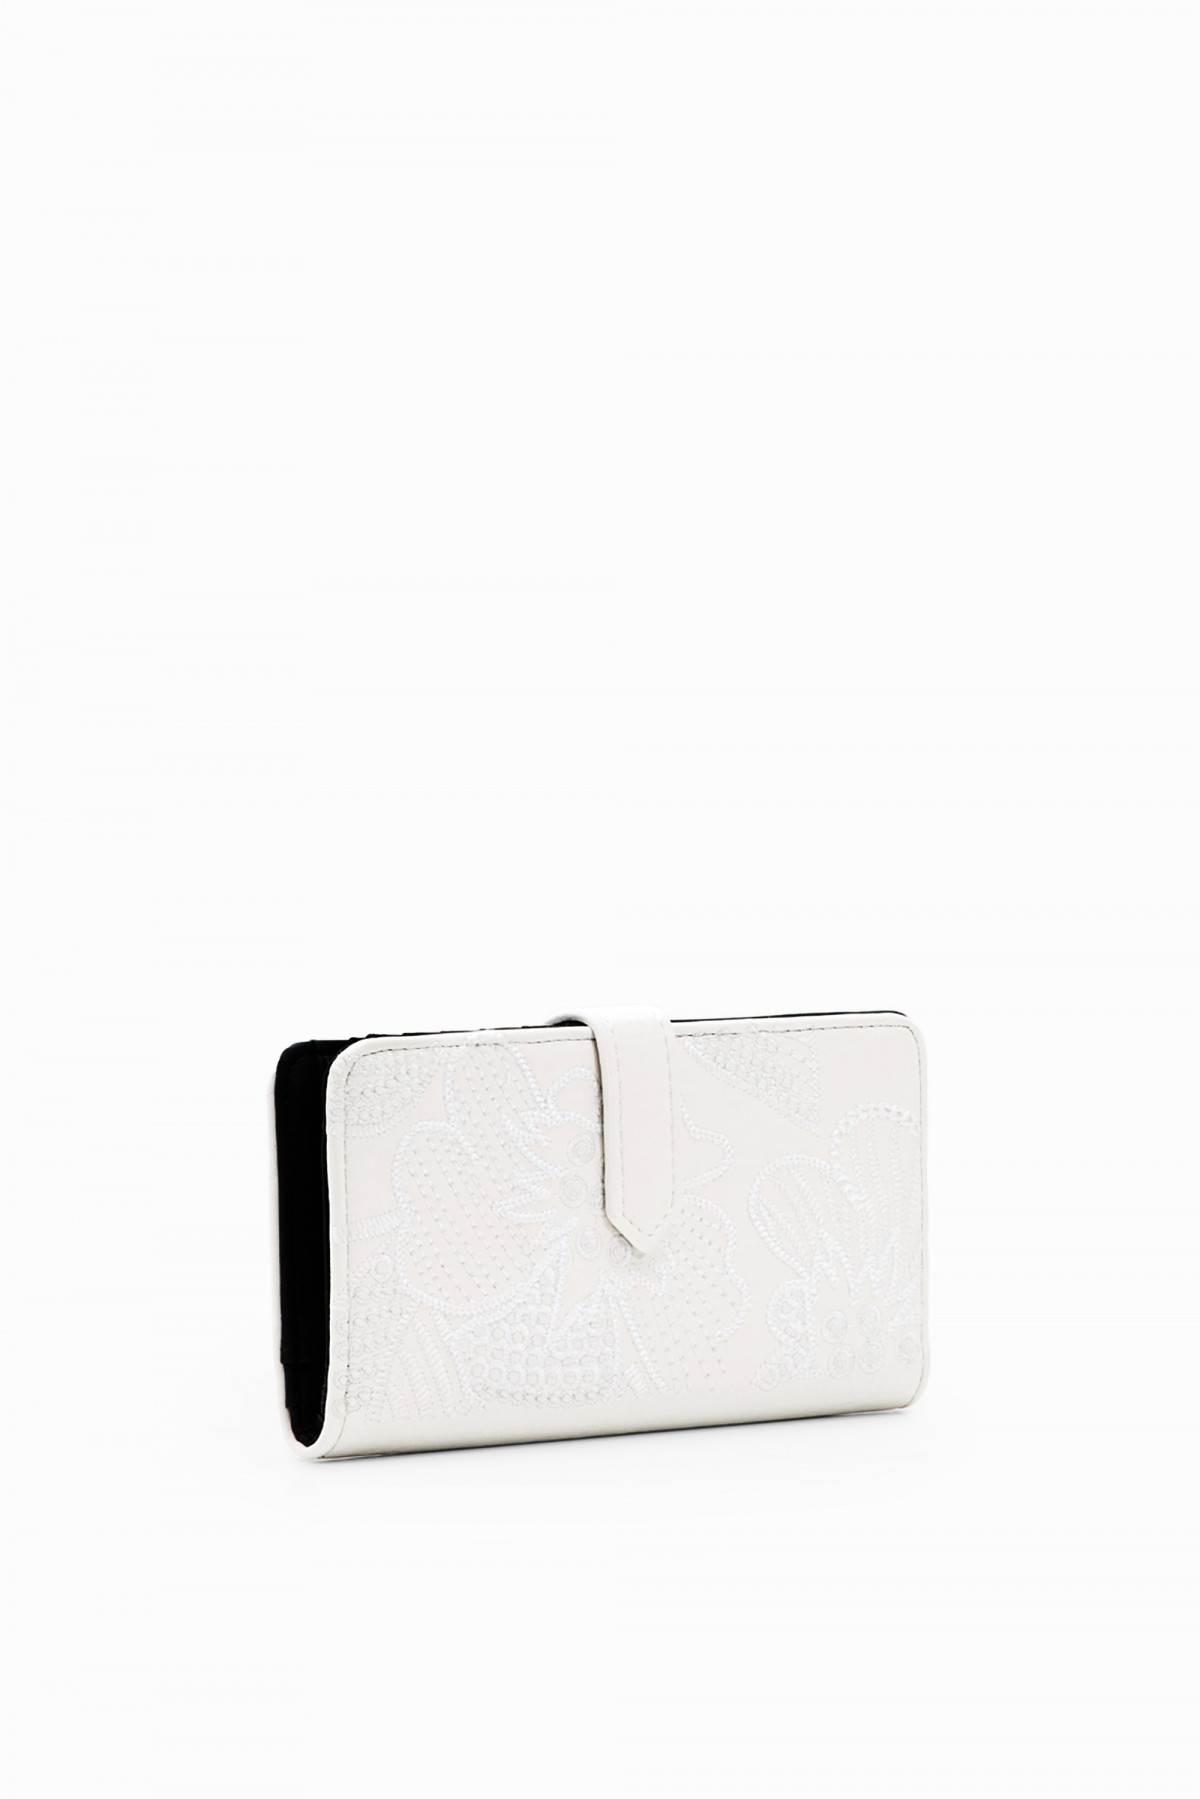 Desigual közepes hímzett pénztárca kapcsos fehér